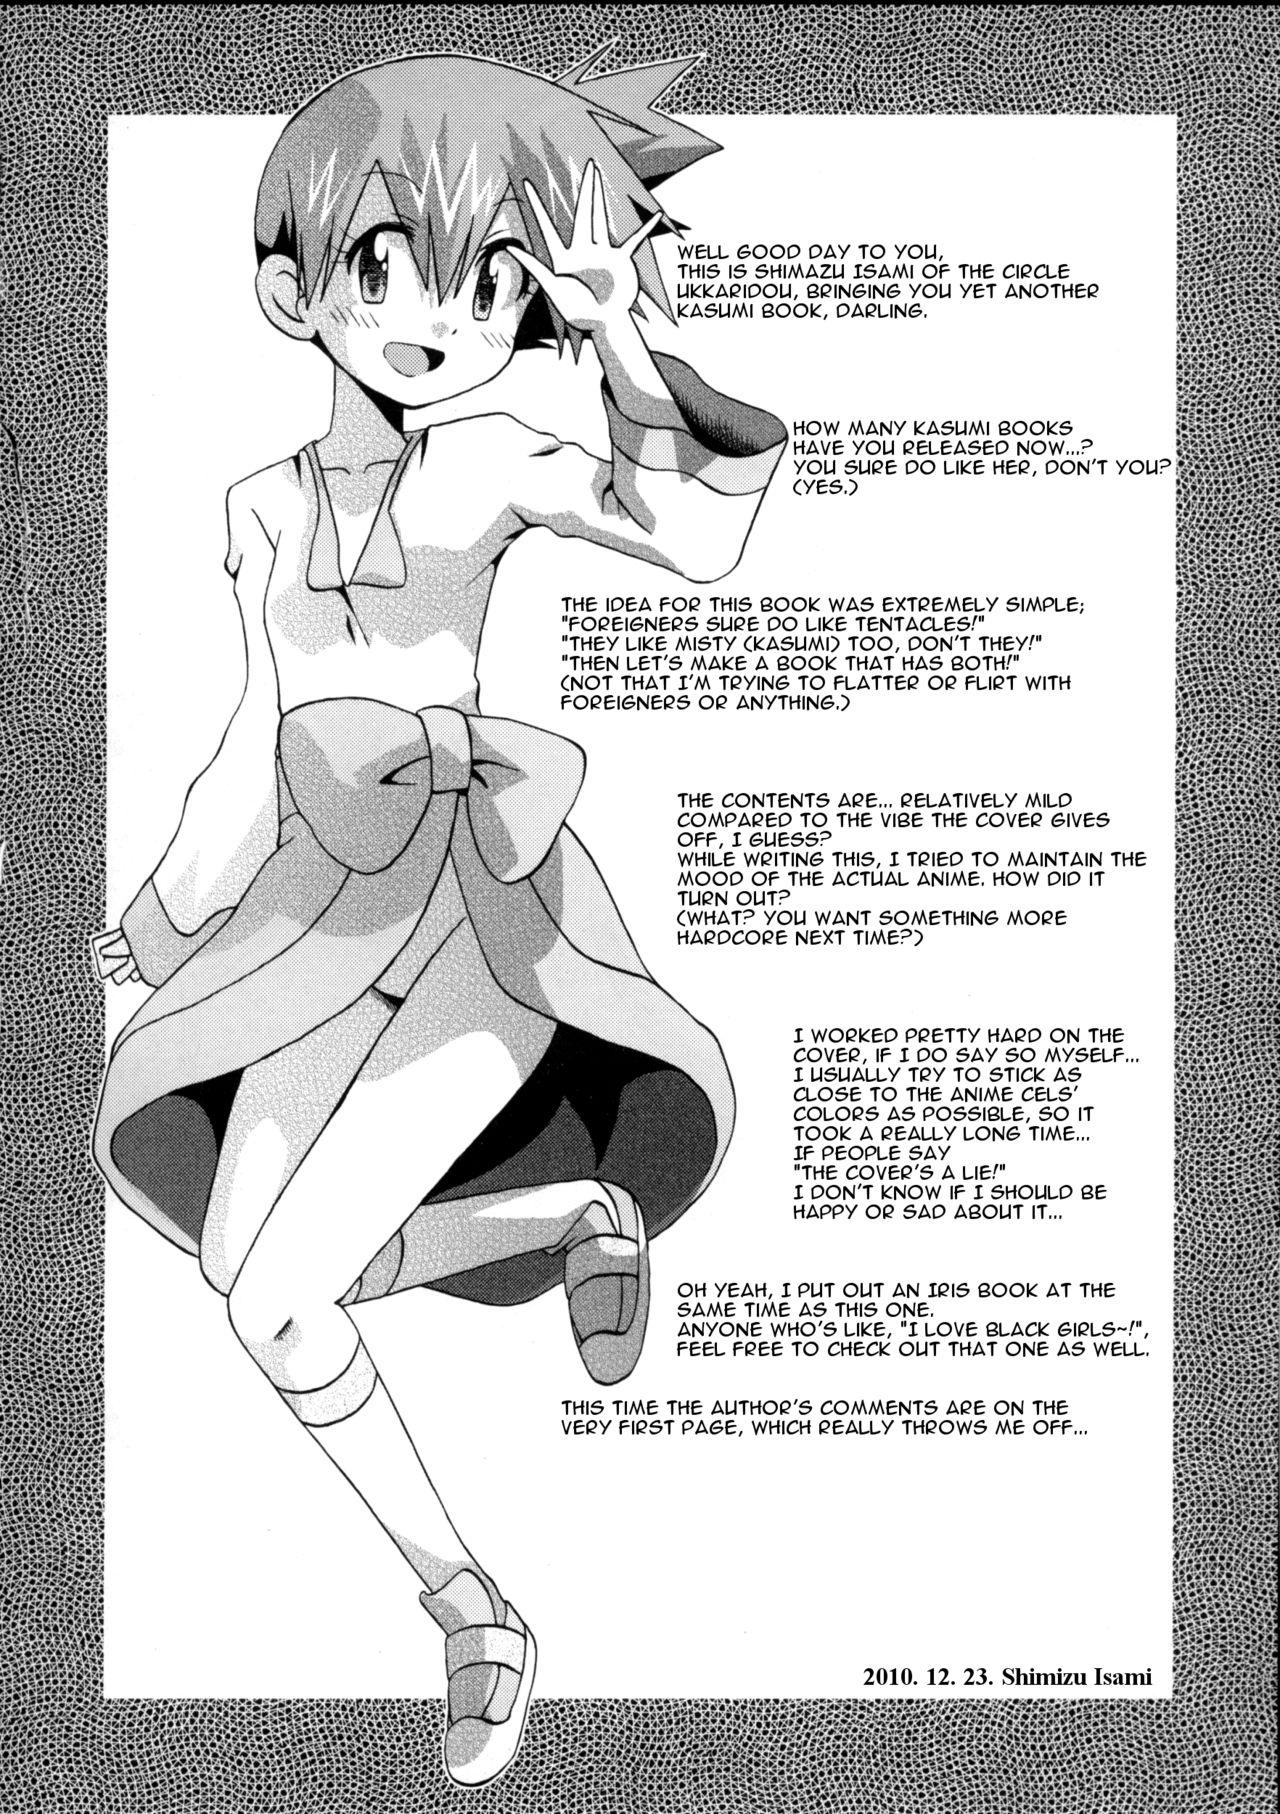 No Condom Nami ni Yurameki Ima wa Madoromu - Pokemon Chupa - Page 4